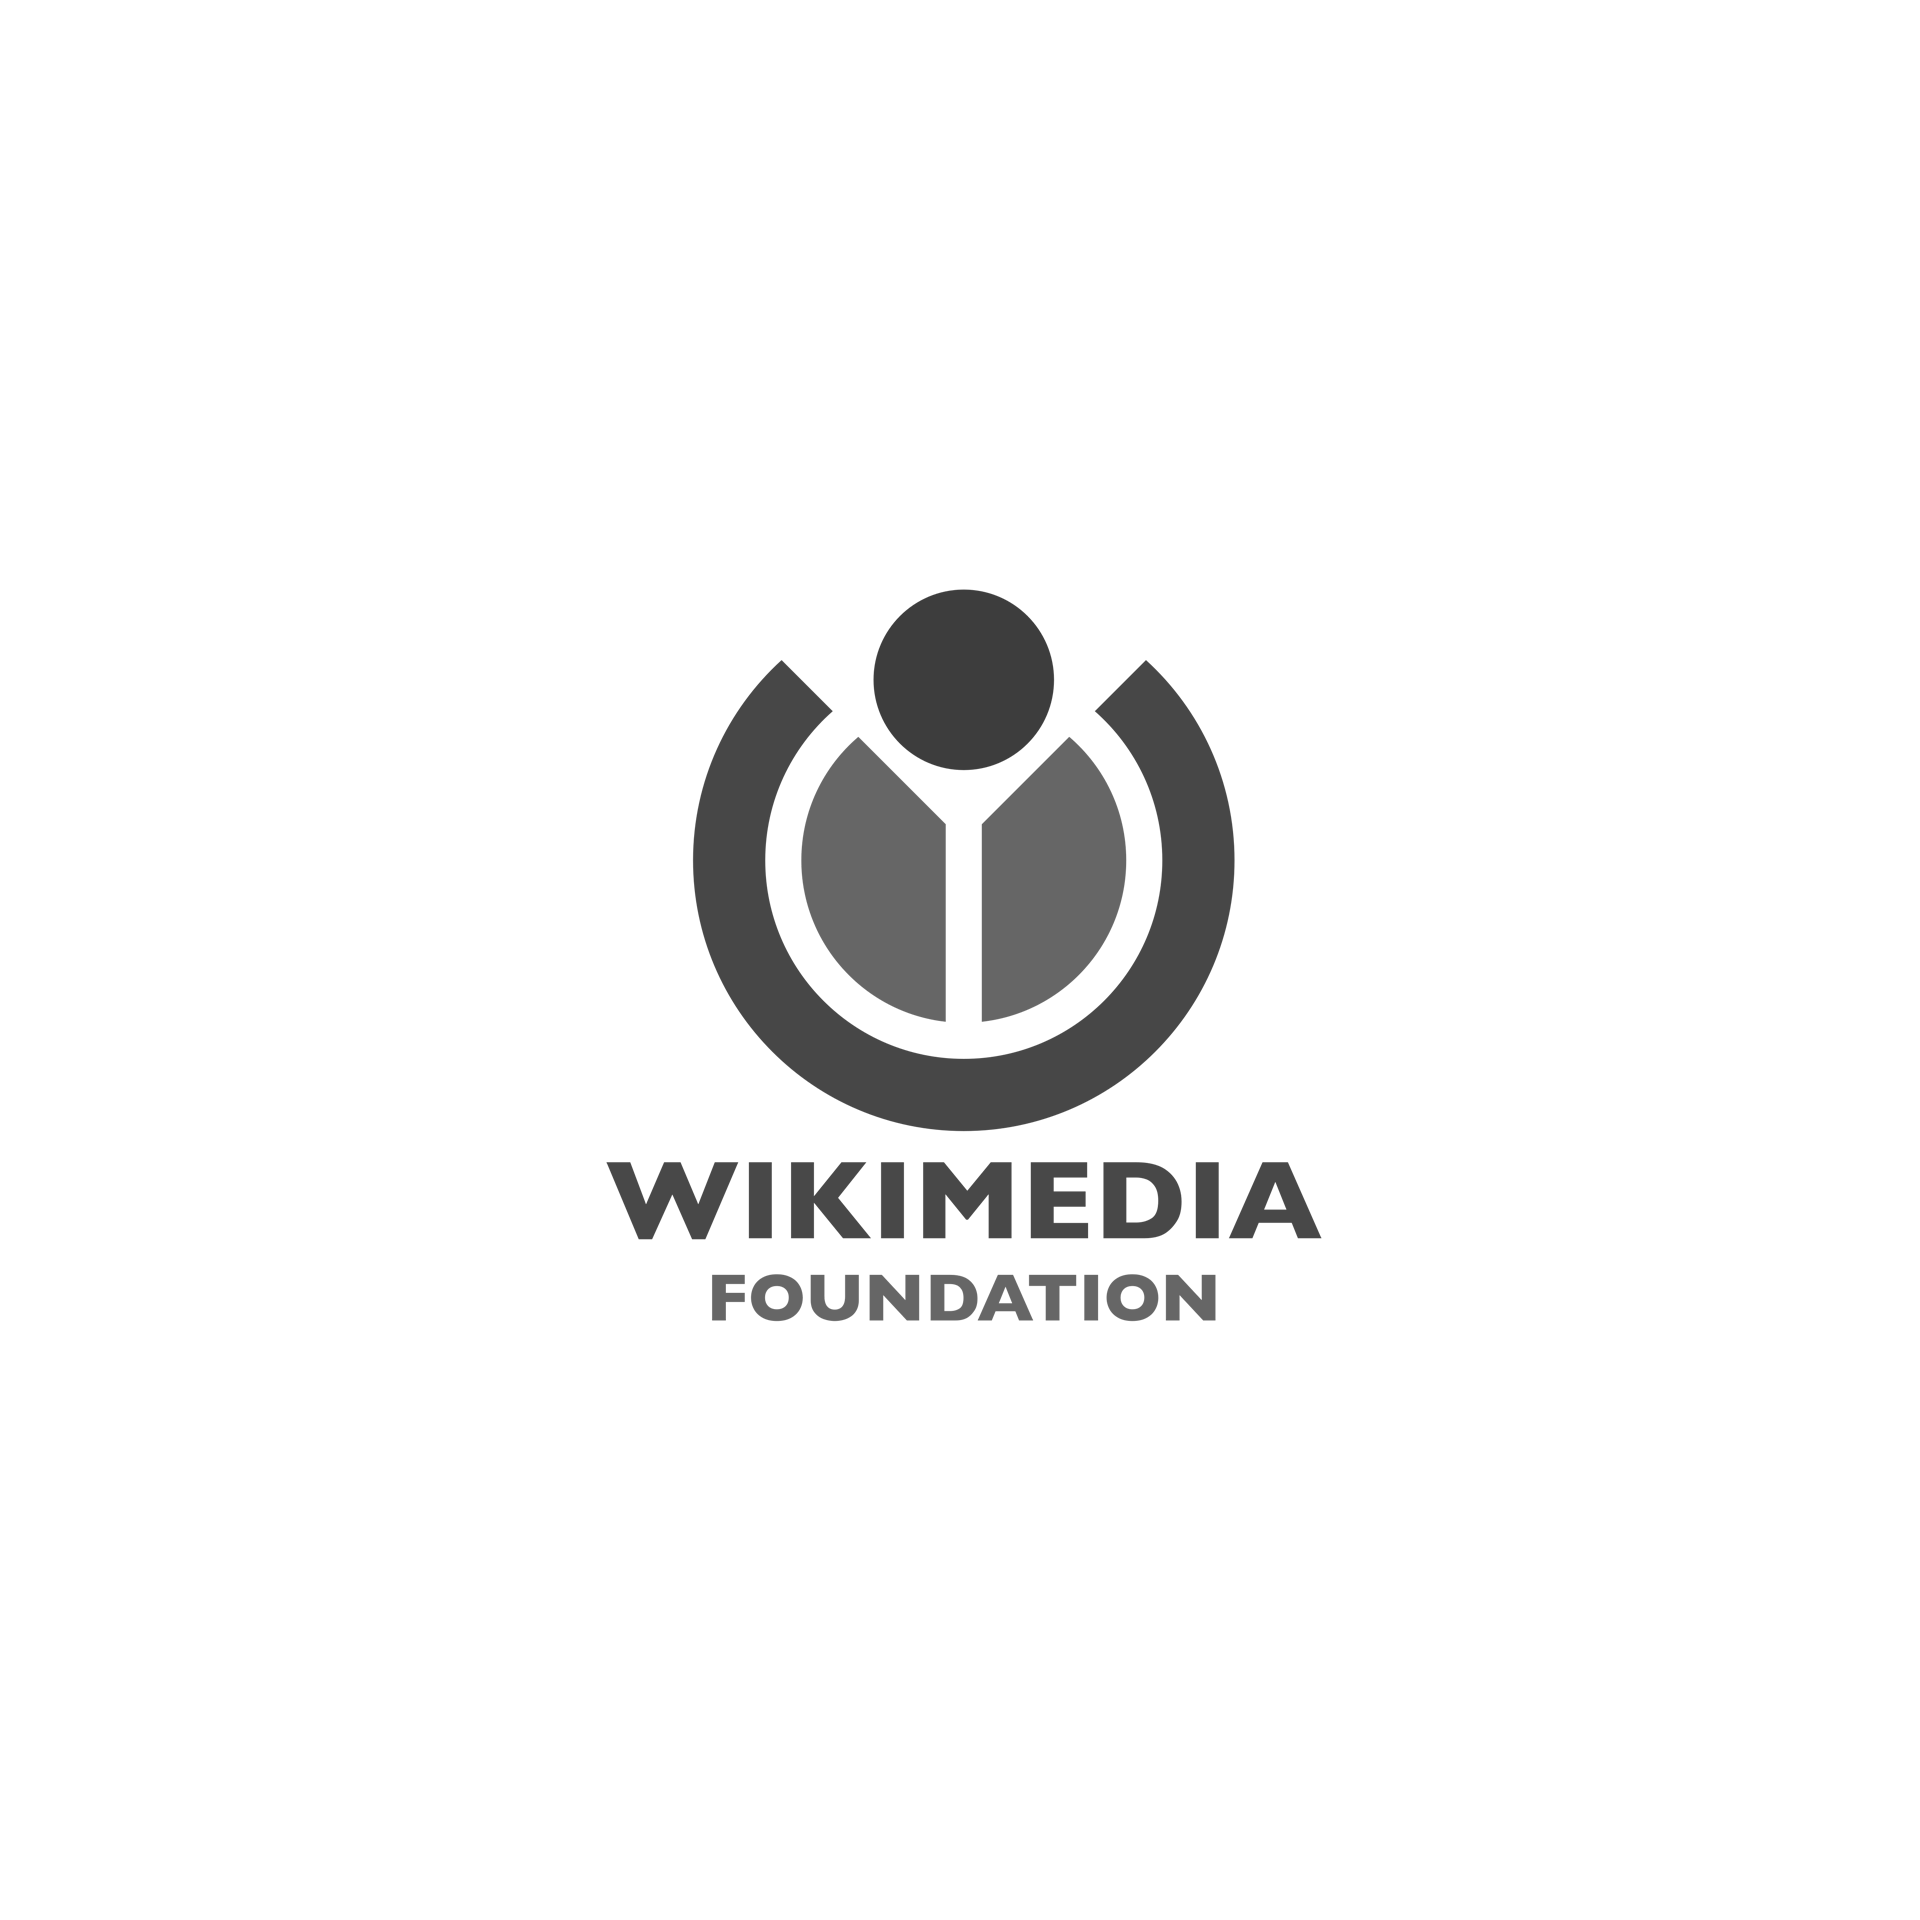 Wikimedia_Foundation_RGB_logo_with_text